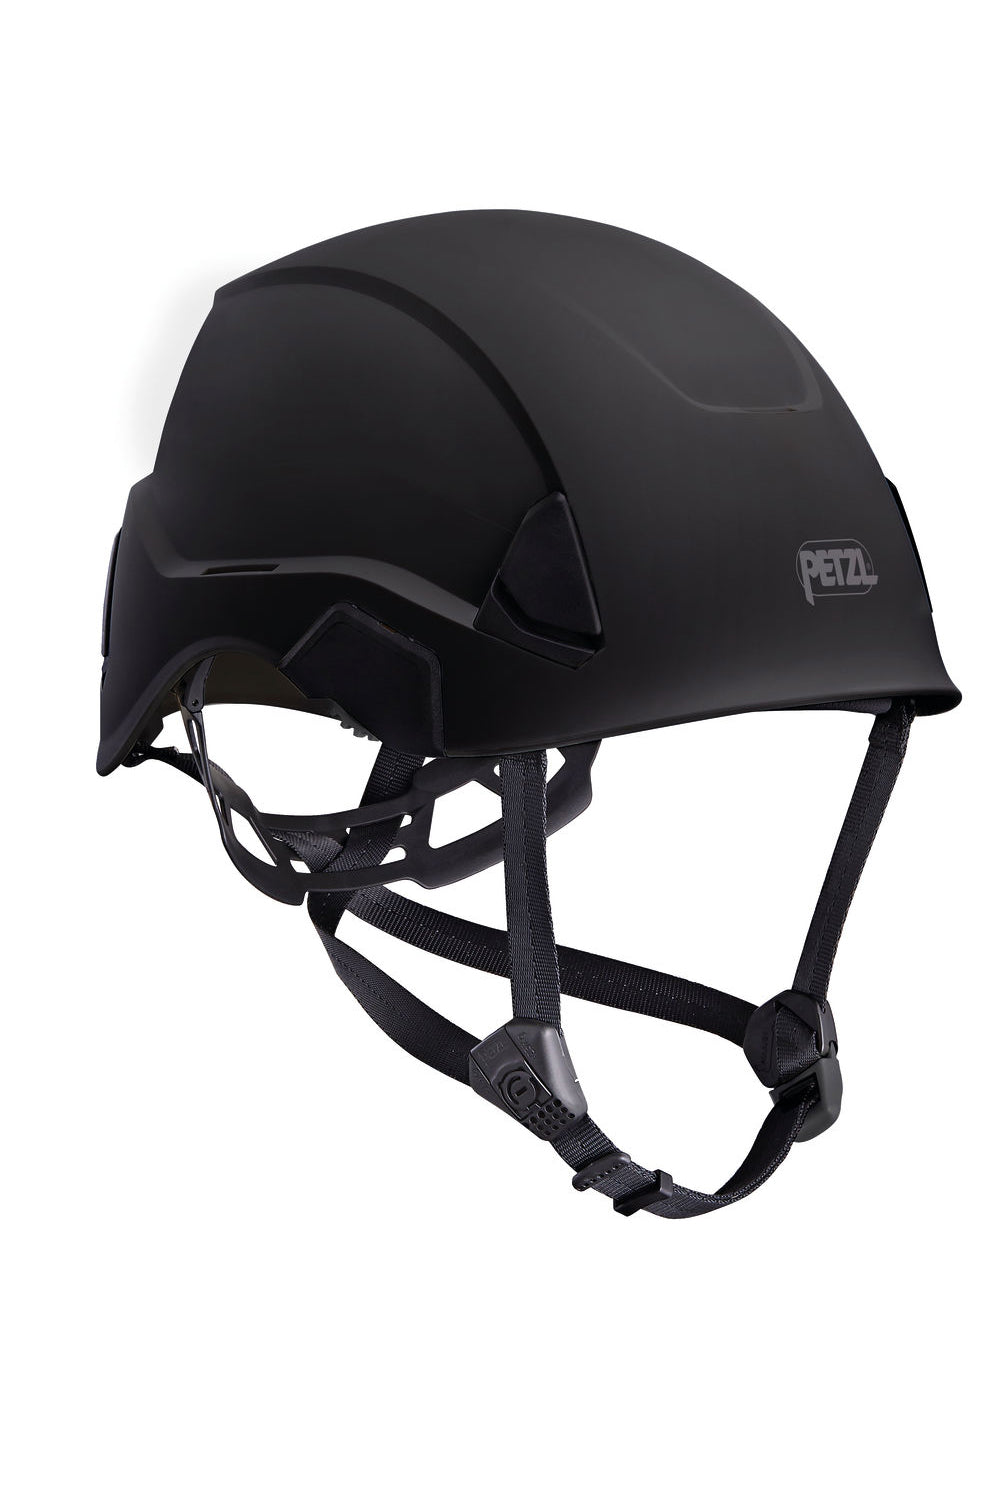 Petzl - Strato Helmet